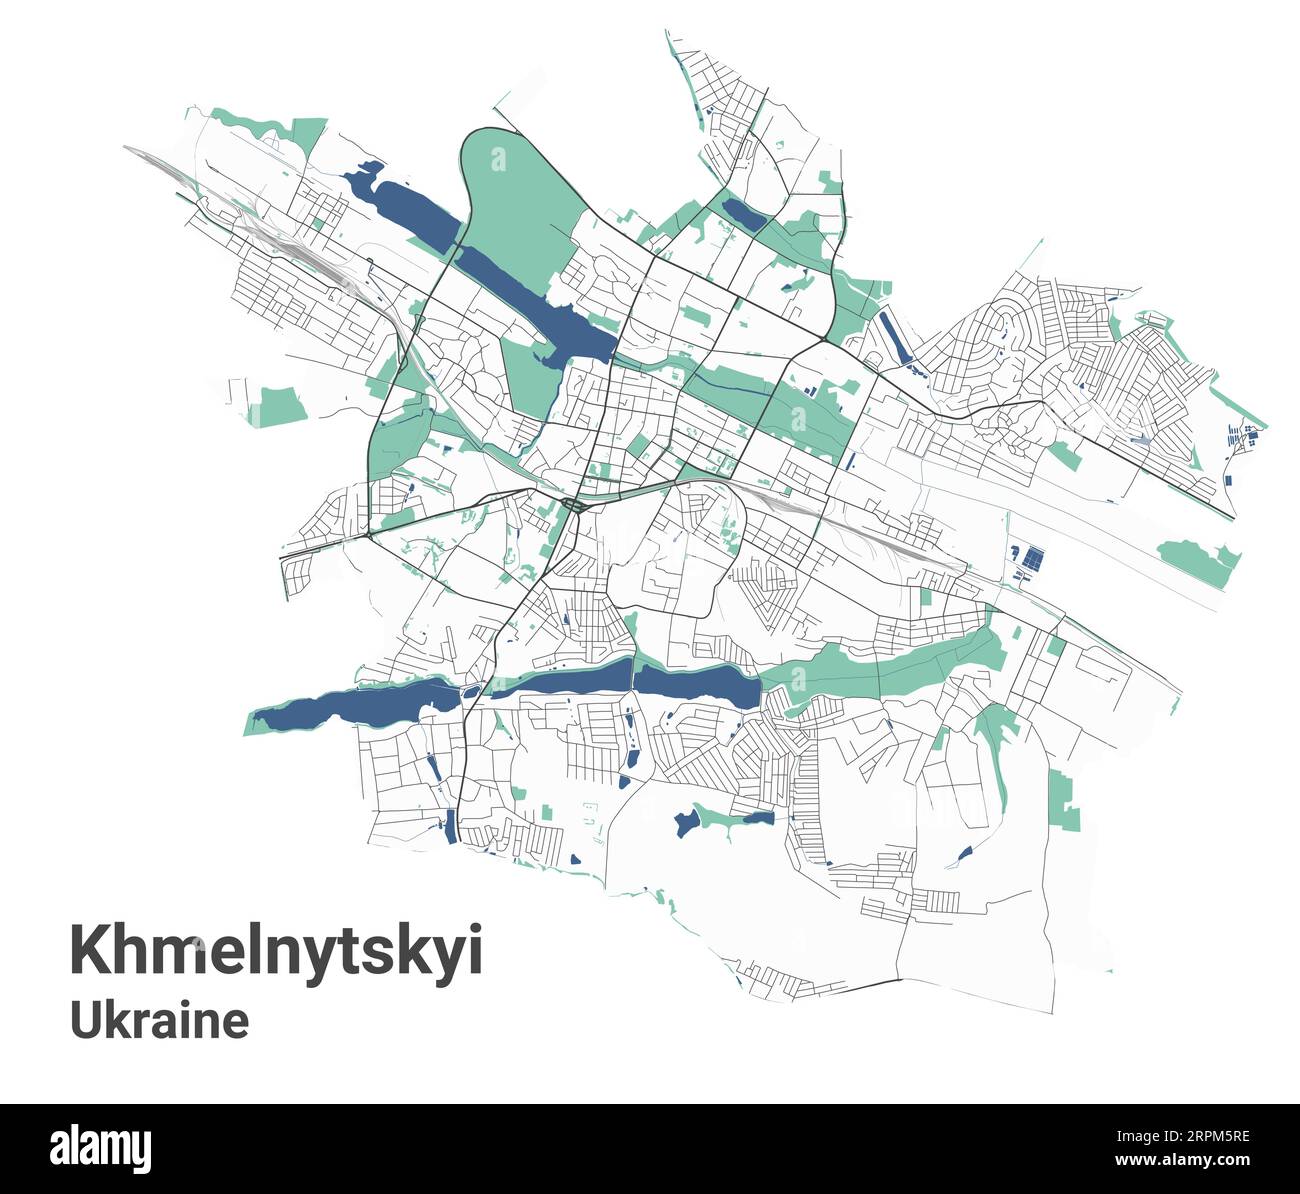 Khmelnytskyi Karte, ukrainische Stadt. Stadtplan mit Flüssen und Straßen, Parks und Eisenbahnen. Vektorillustration. Stock Vektor